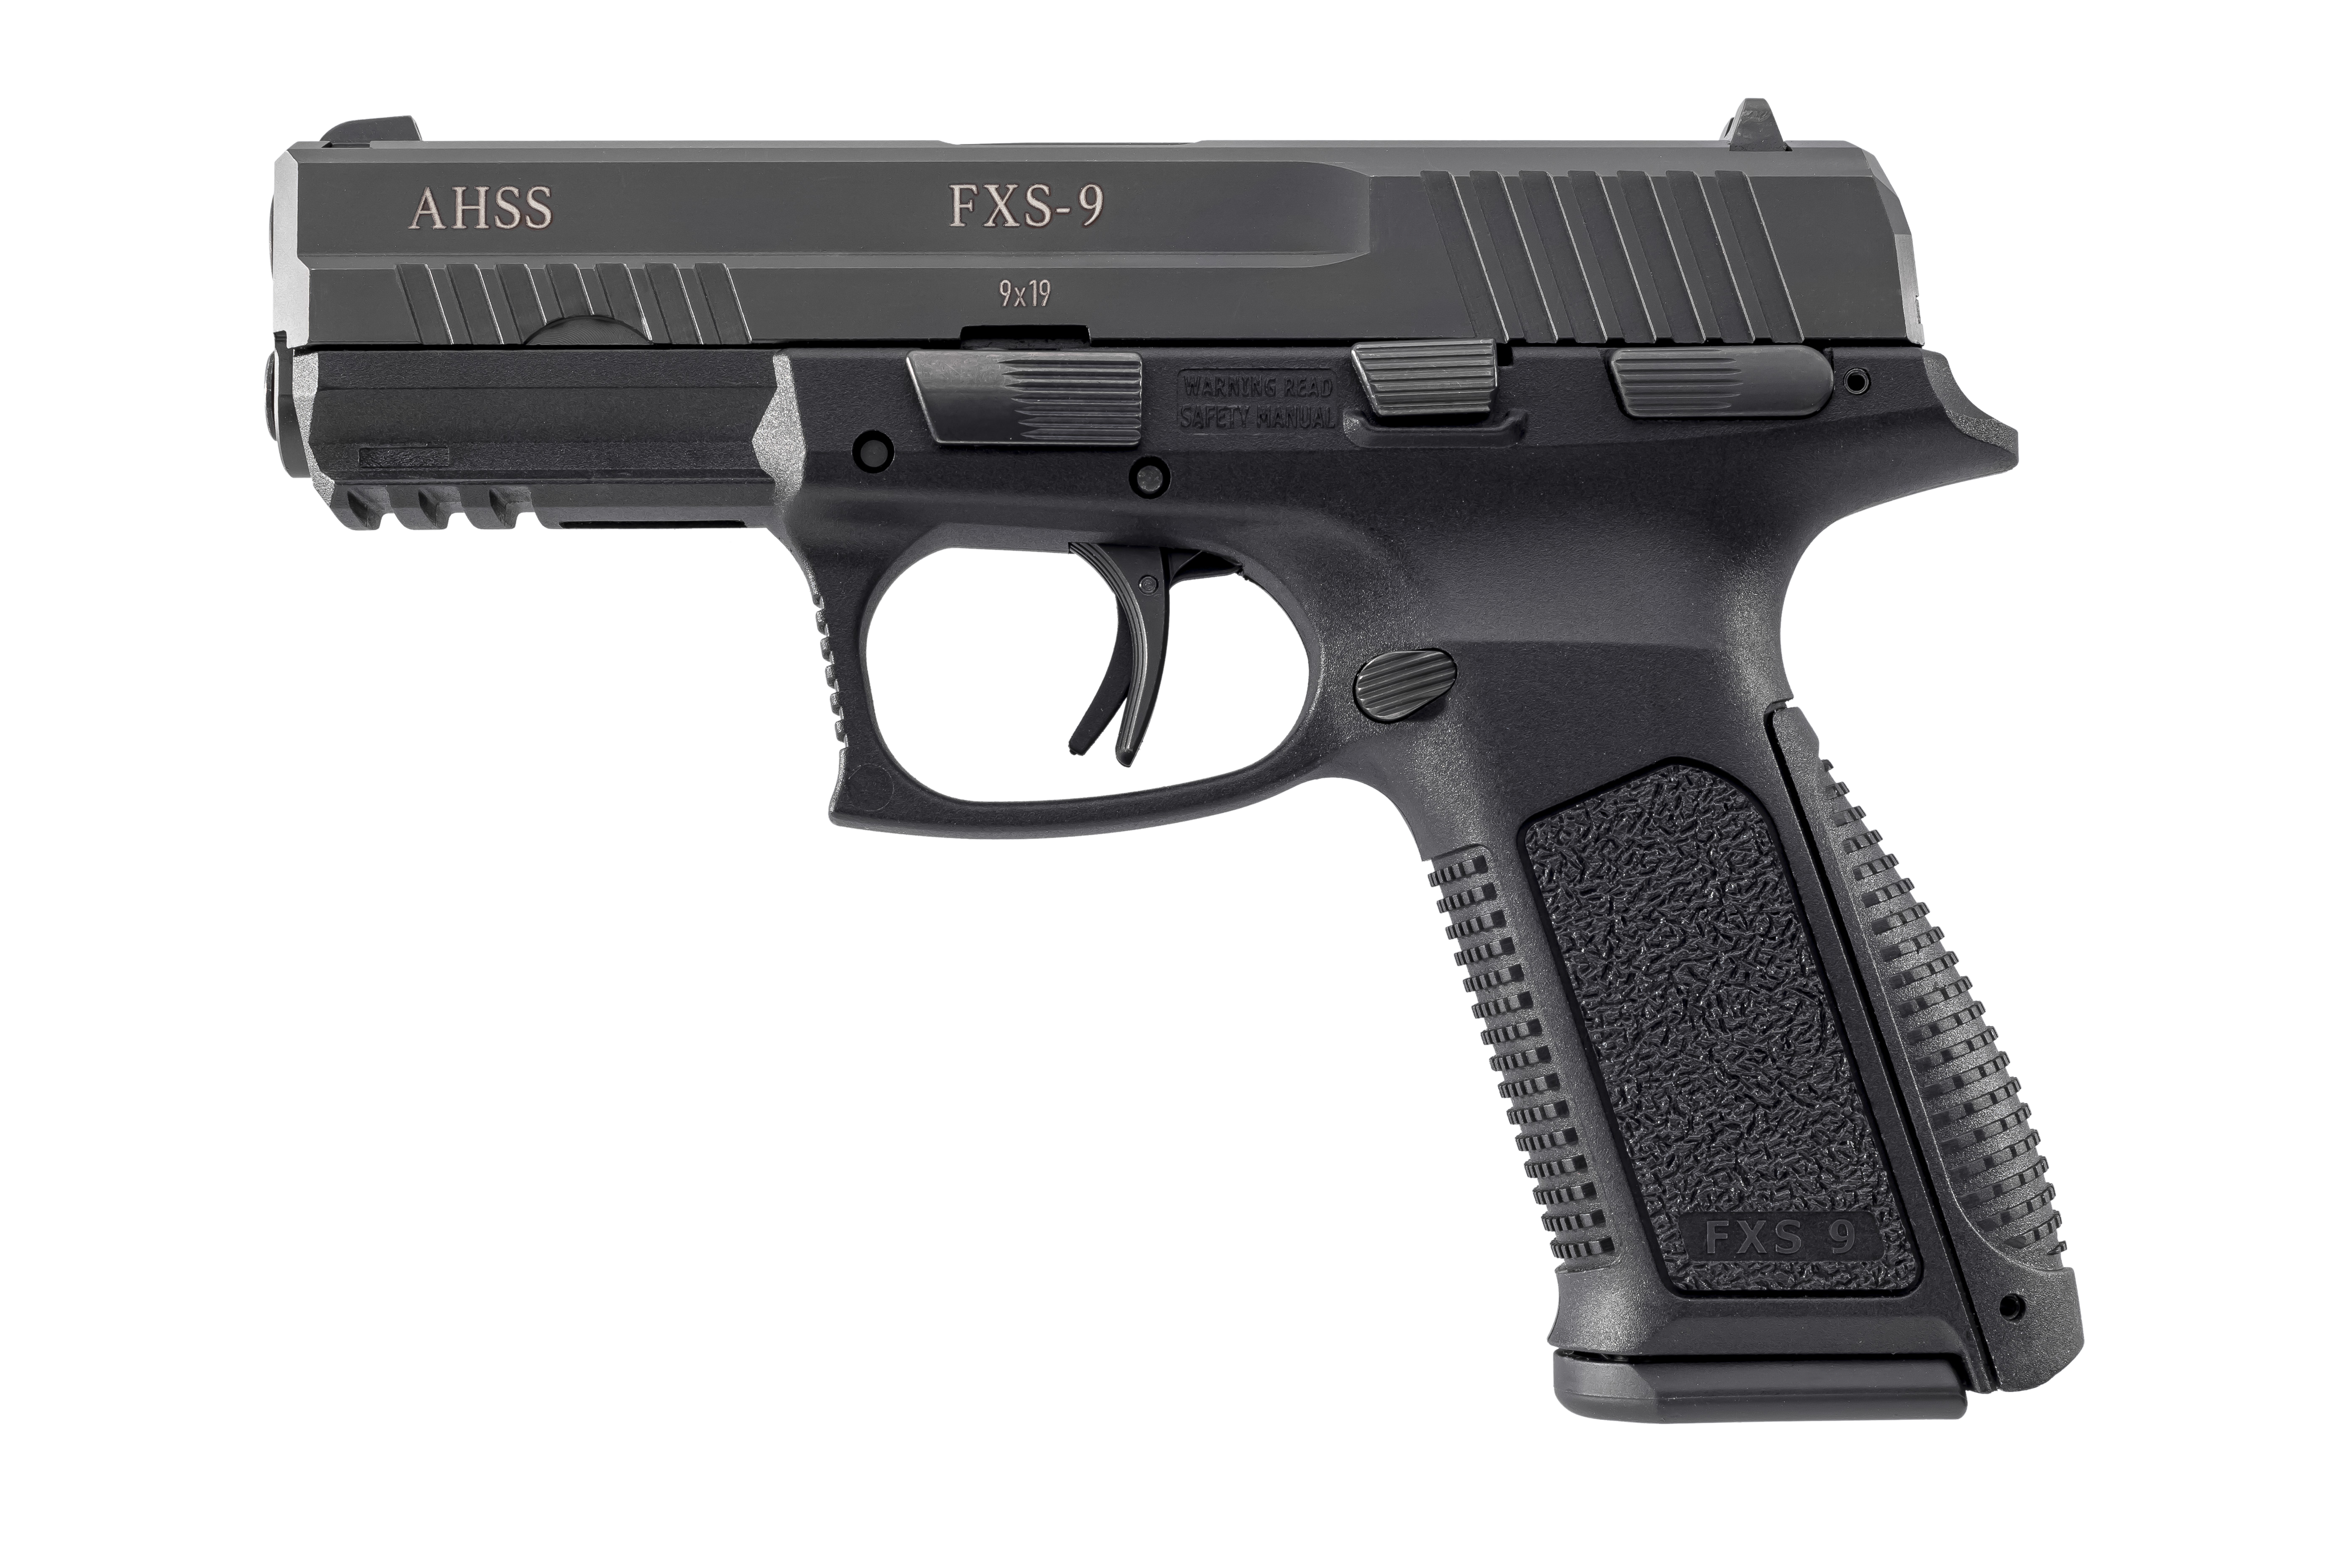 AHSS FXS9 9mm semi automatic pistols